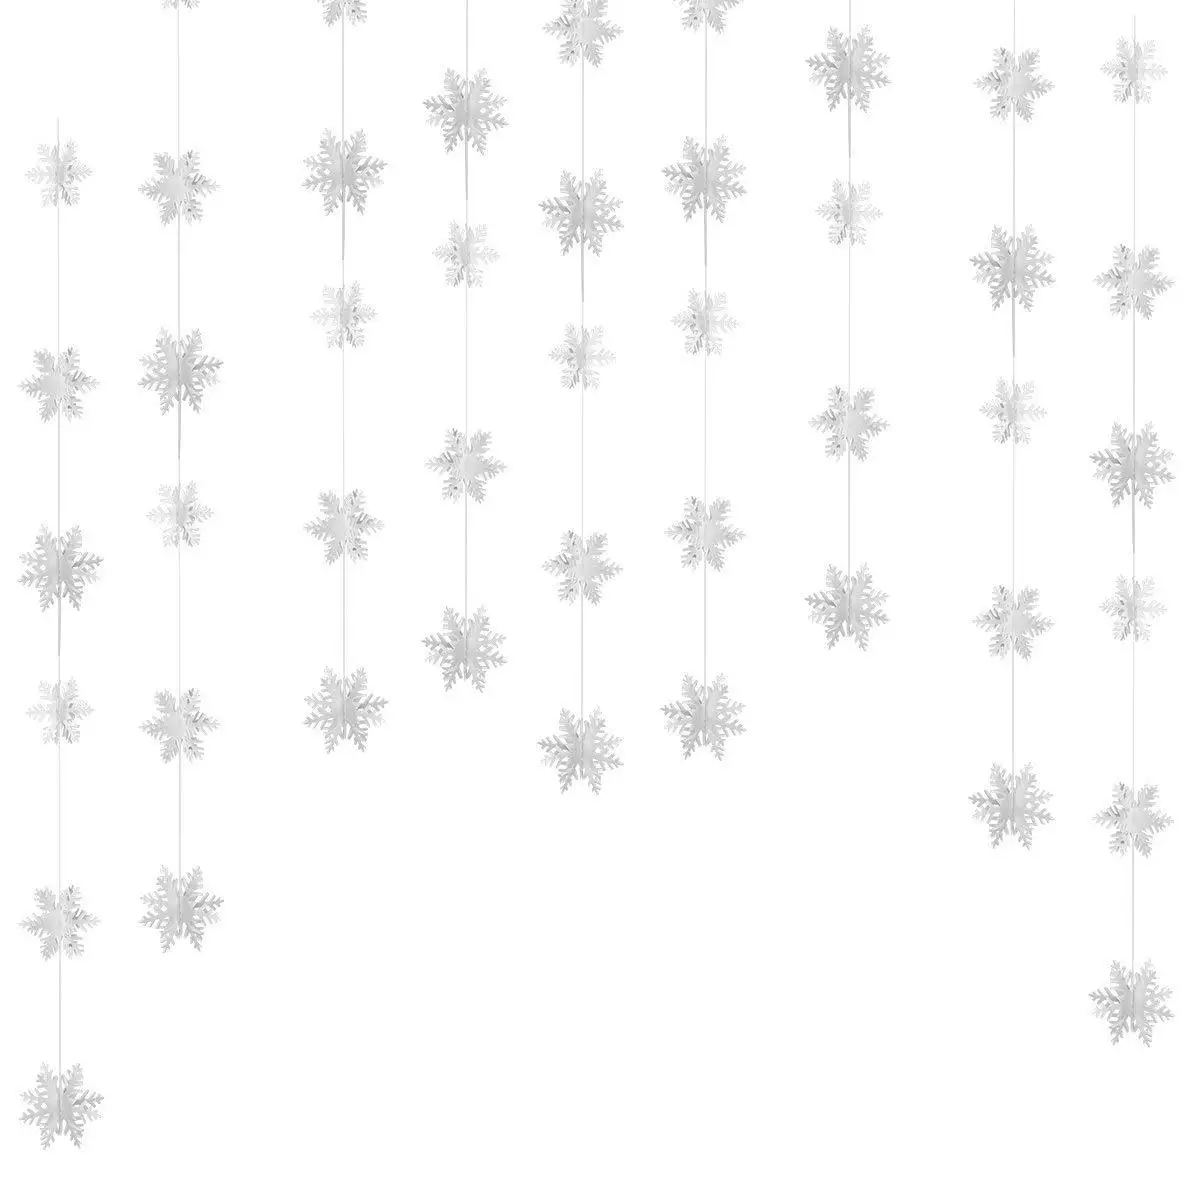 1 гирлянда украшения для рождественской елки Висячие подвесные украшения 3D Снежинка звезда полосы гирлянды флажков новогодние вечерние украшения - Цвет: 1 Set